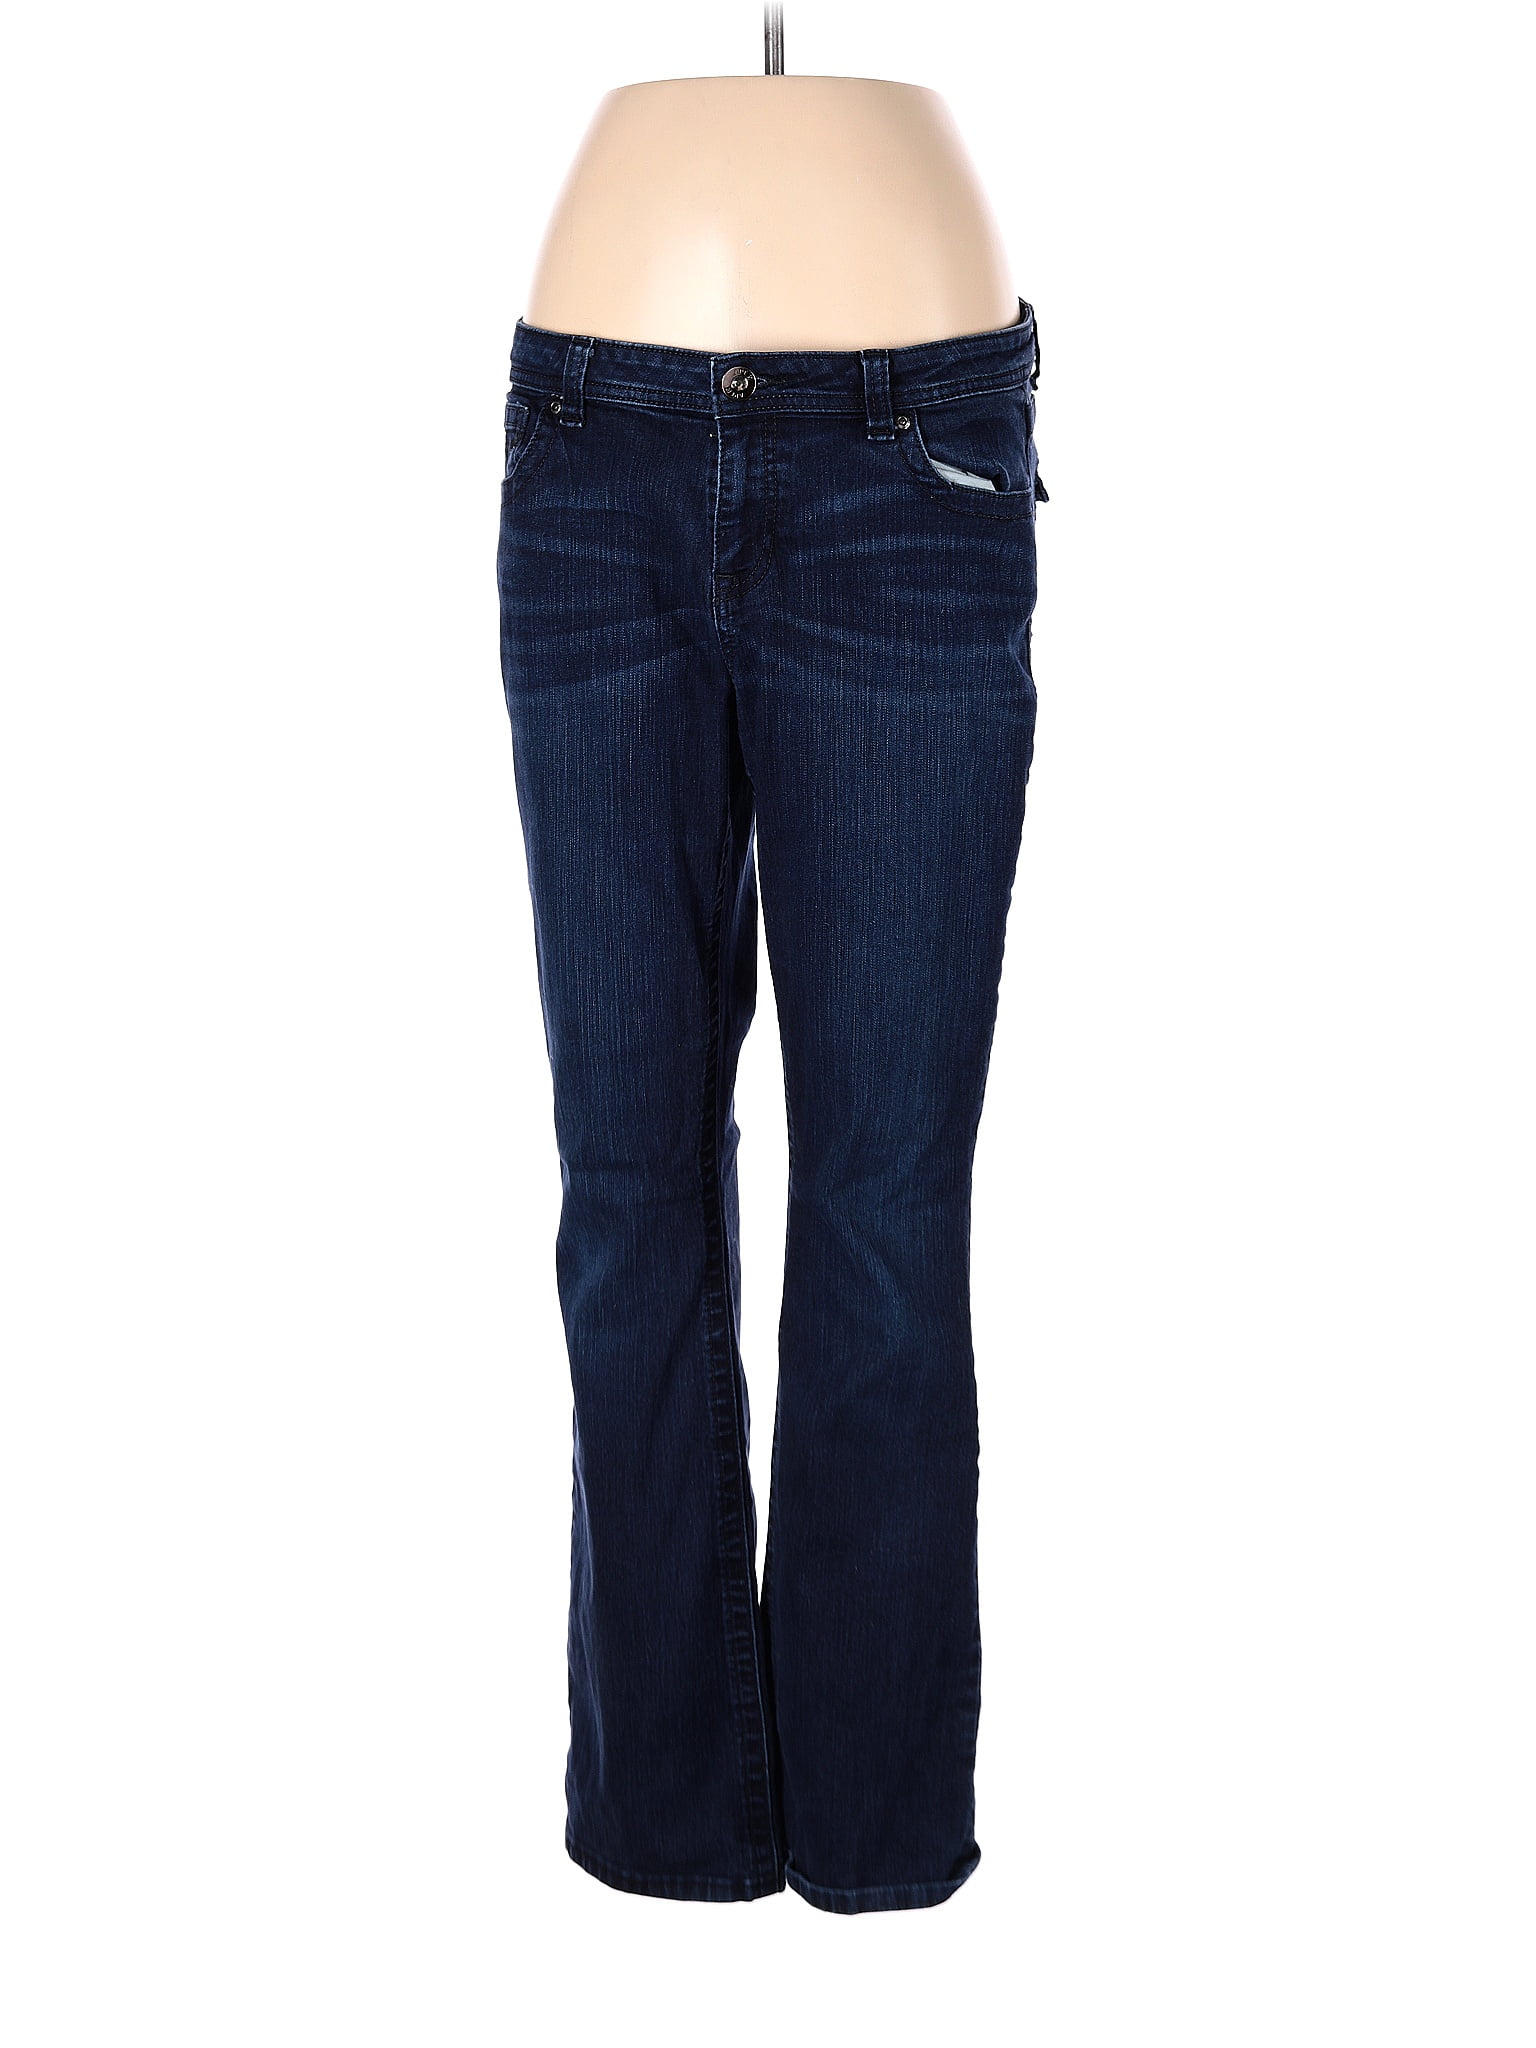 Apt. 9 Blue Jeans Size 12 - 53% off | thredUP